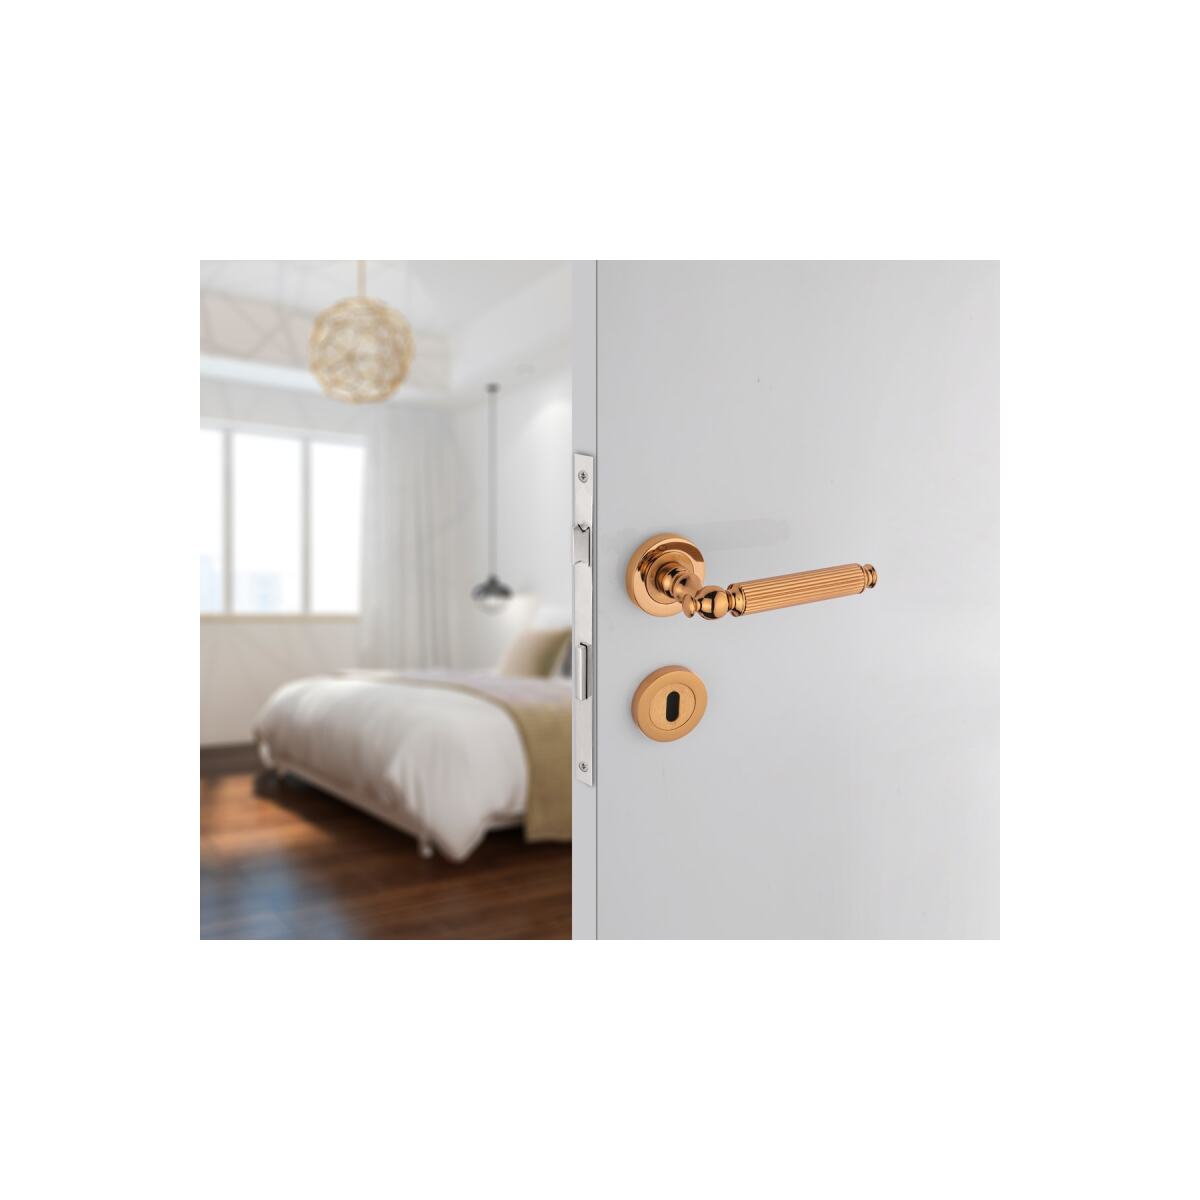 Hanedan Albirifin Oda Kapı Kolu Rustik Kapı Kolu Özel Tasarım Kolu Oda Kapı Kolu 1 Takım